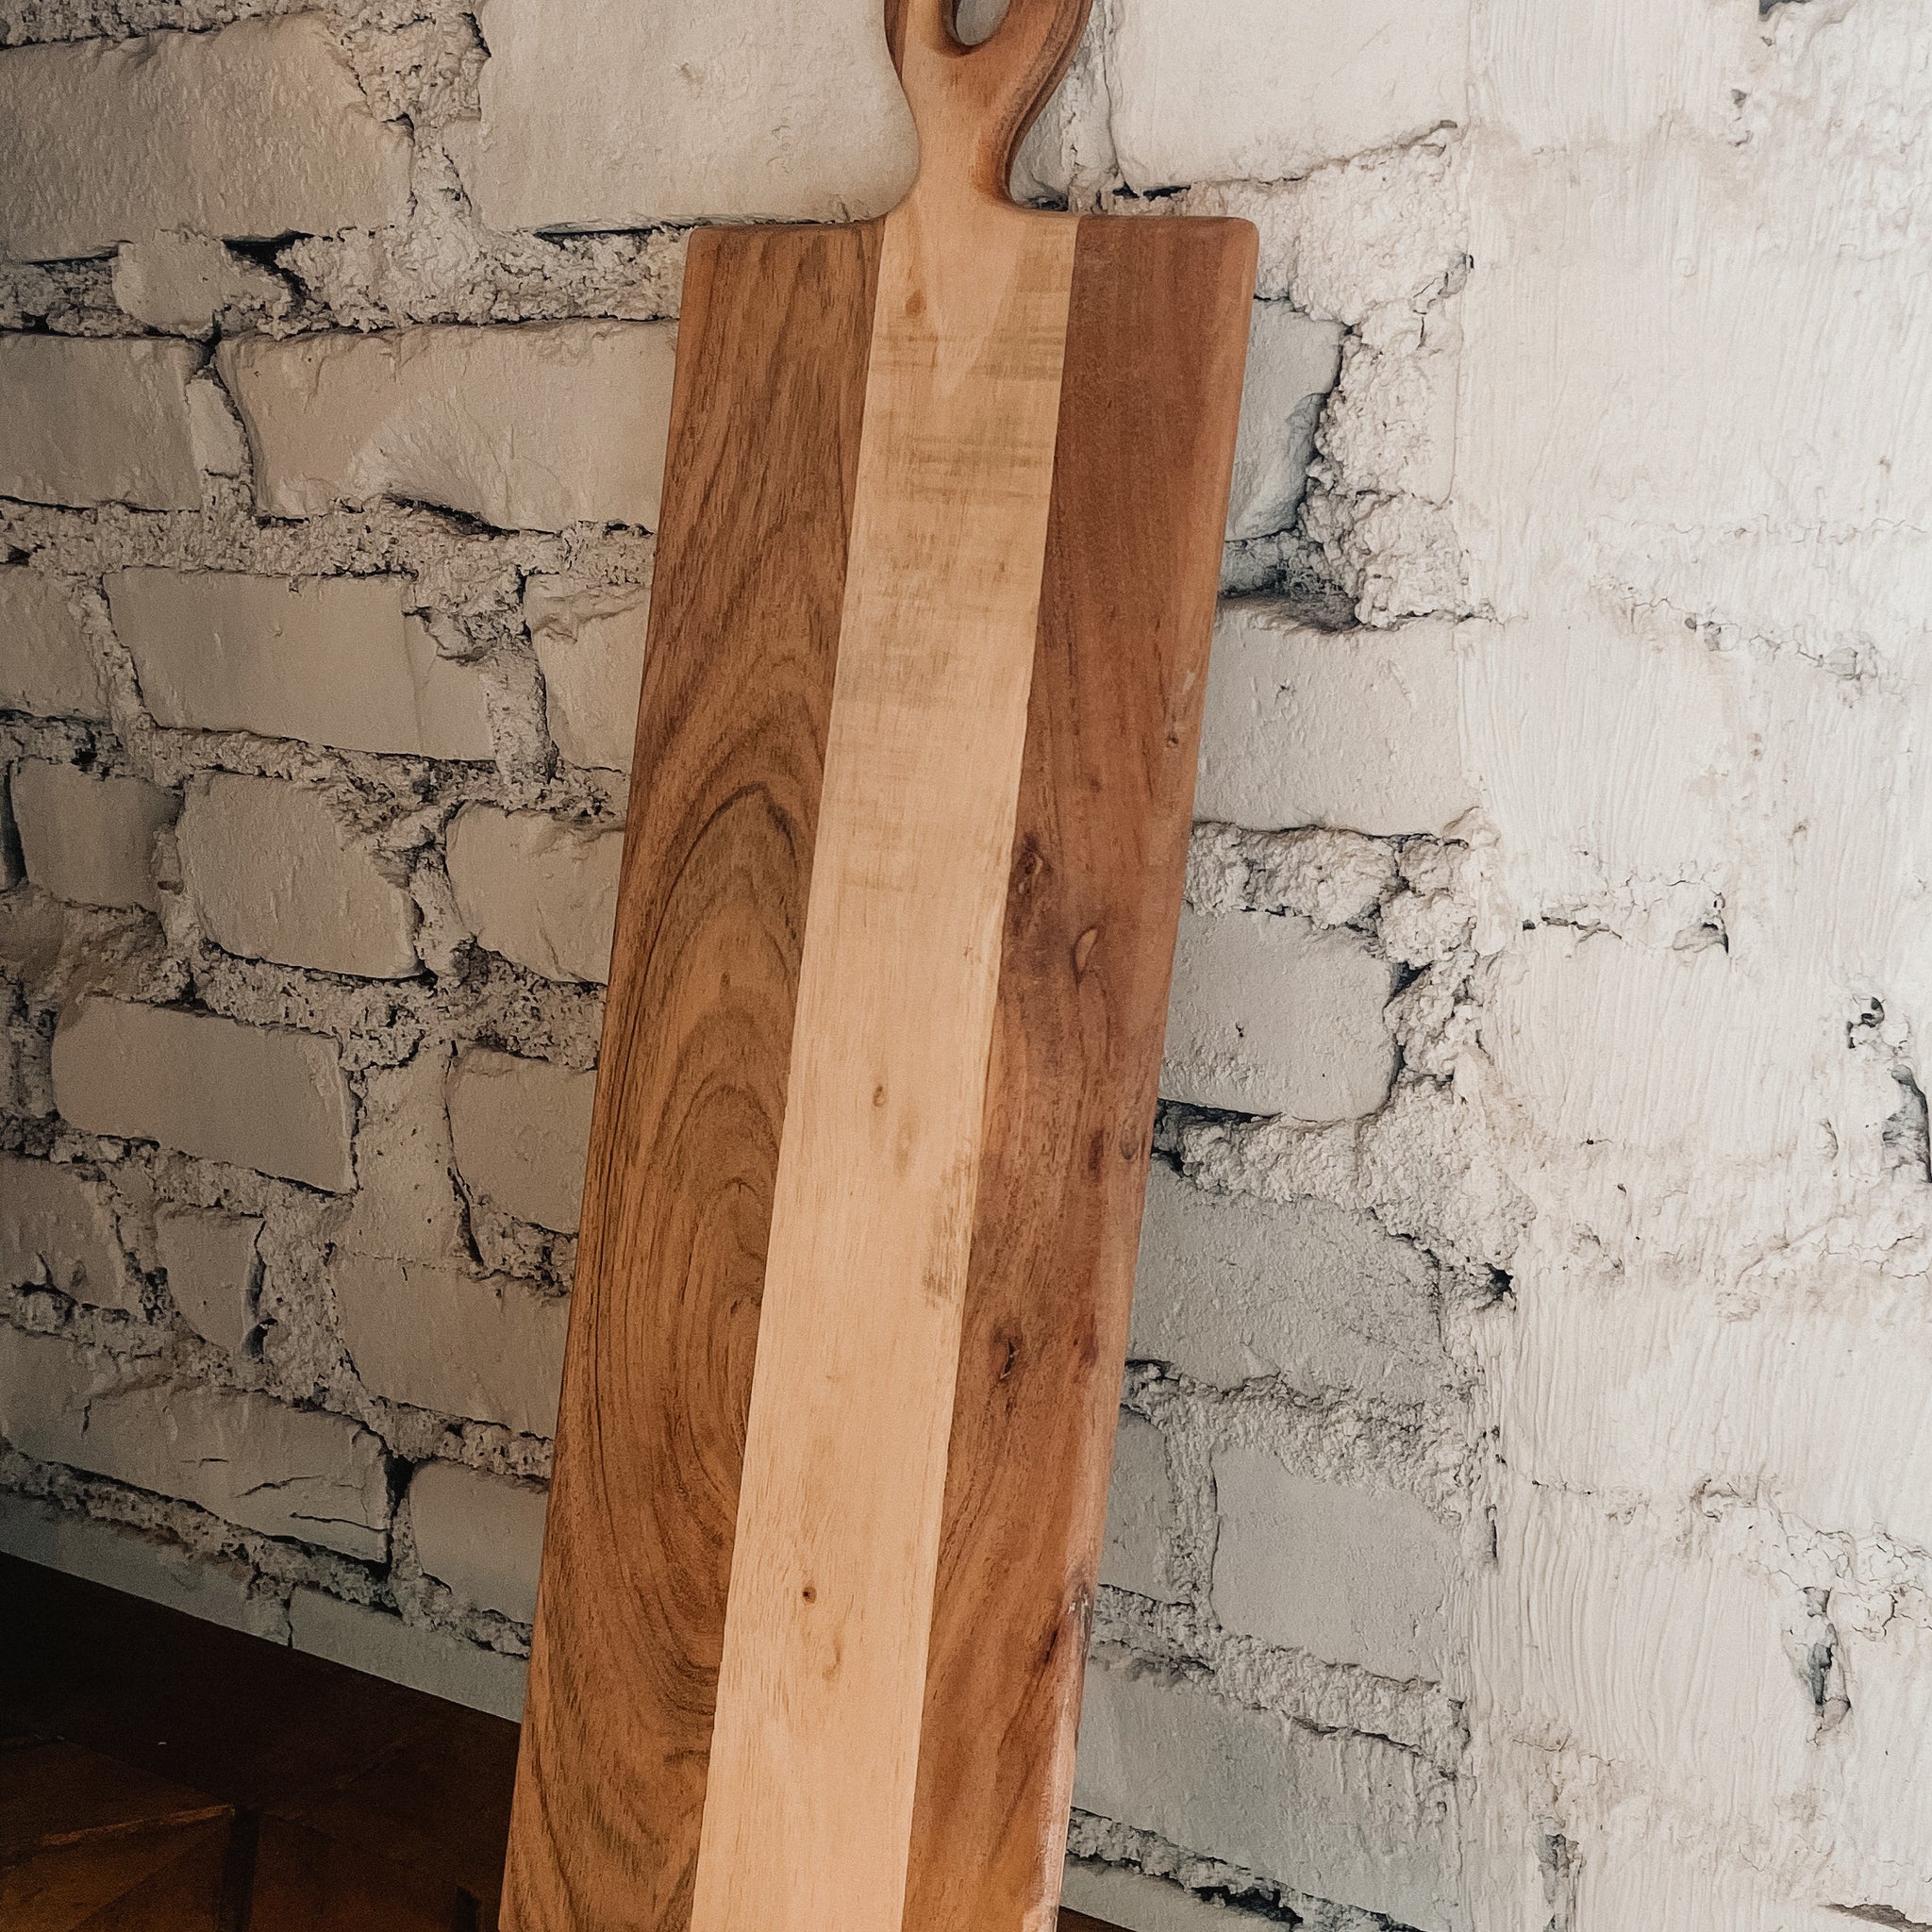 Long Wood Serving Board-19.7"